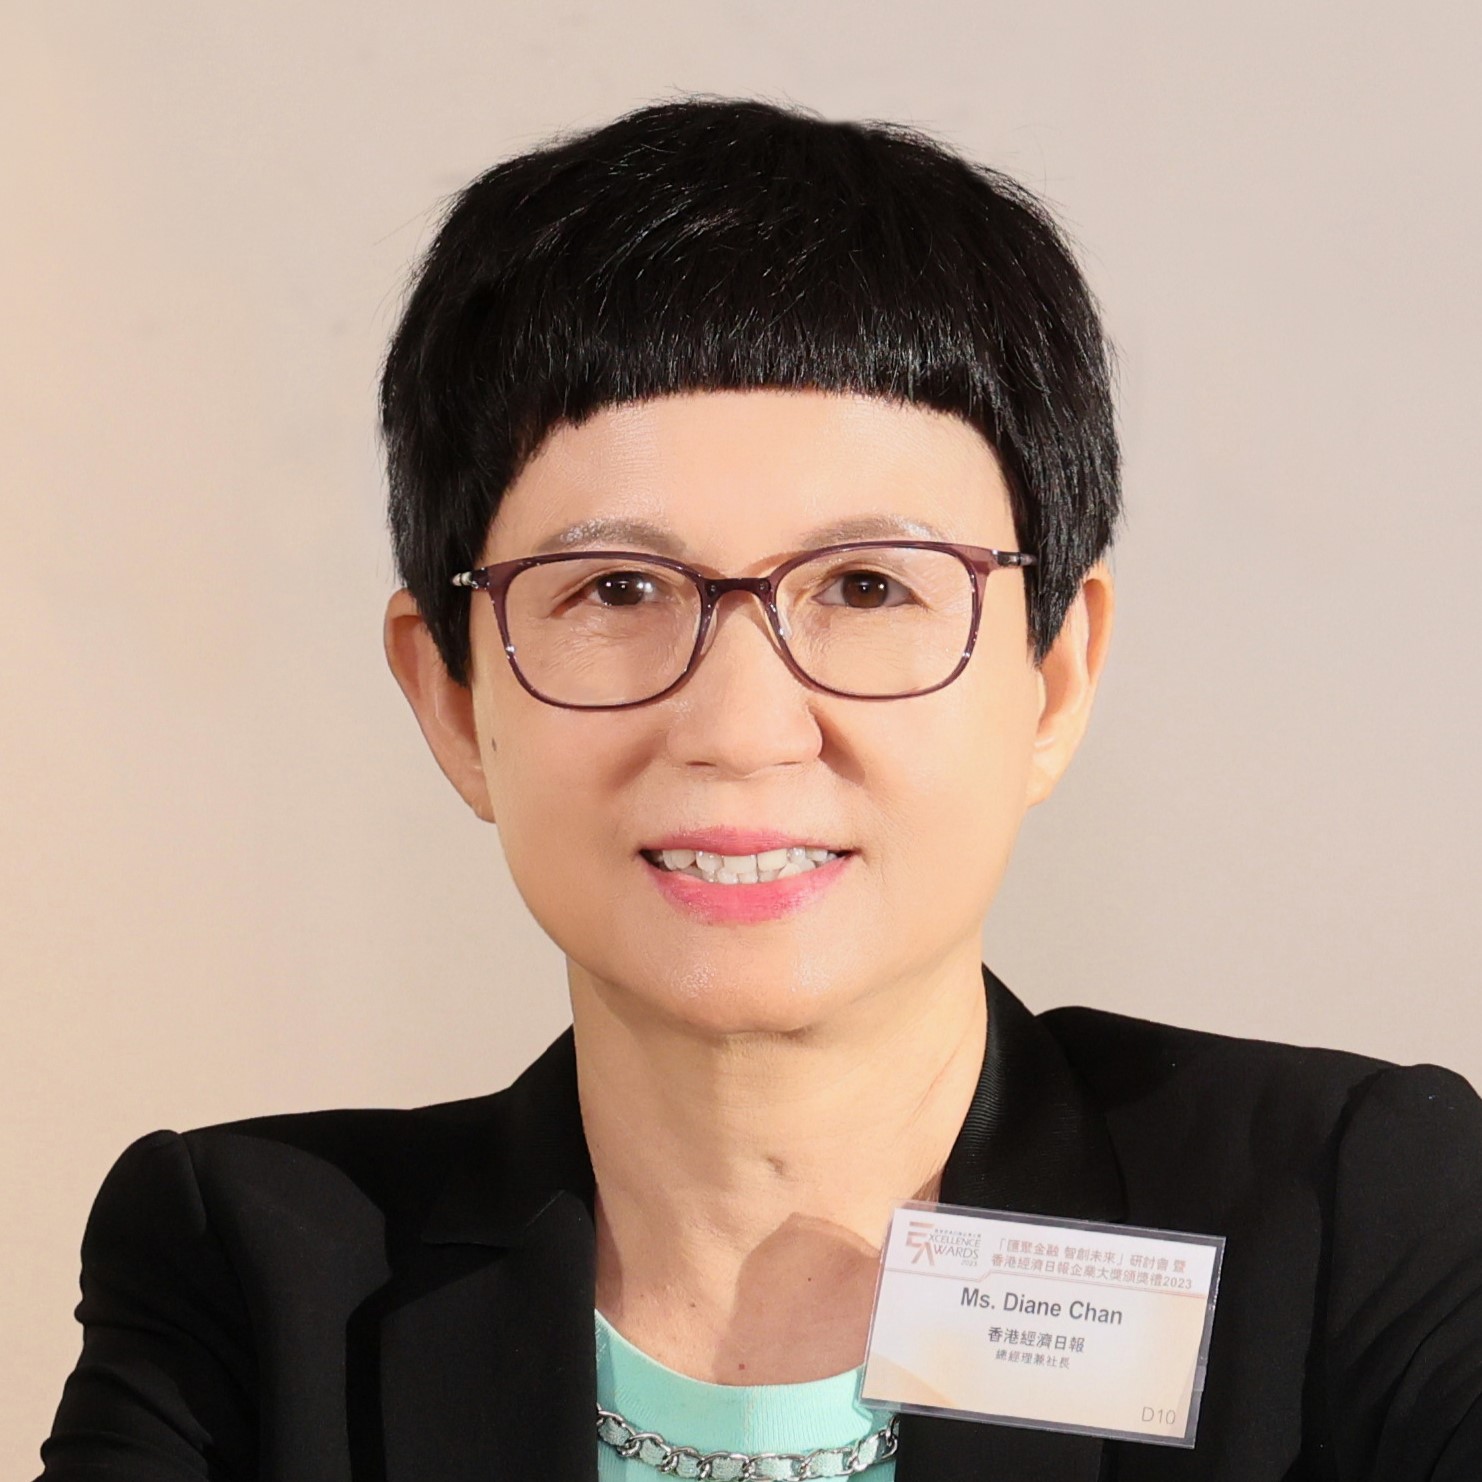 Ms. Diane Chan